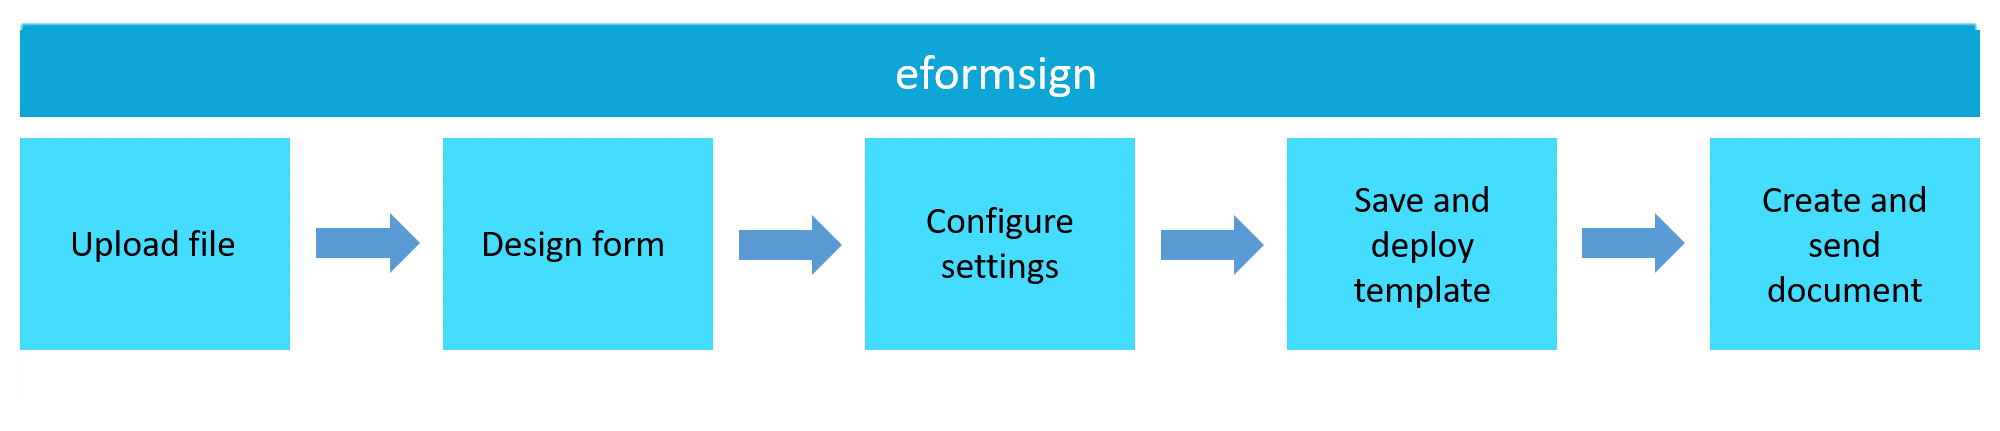 Usage Flow of eformsign Using Web Form Designer